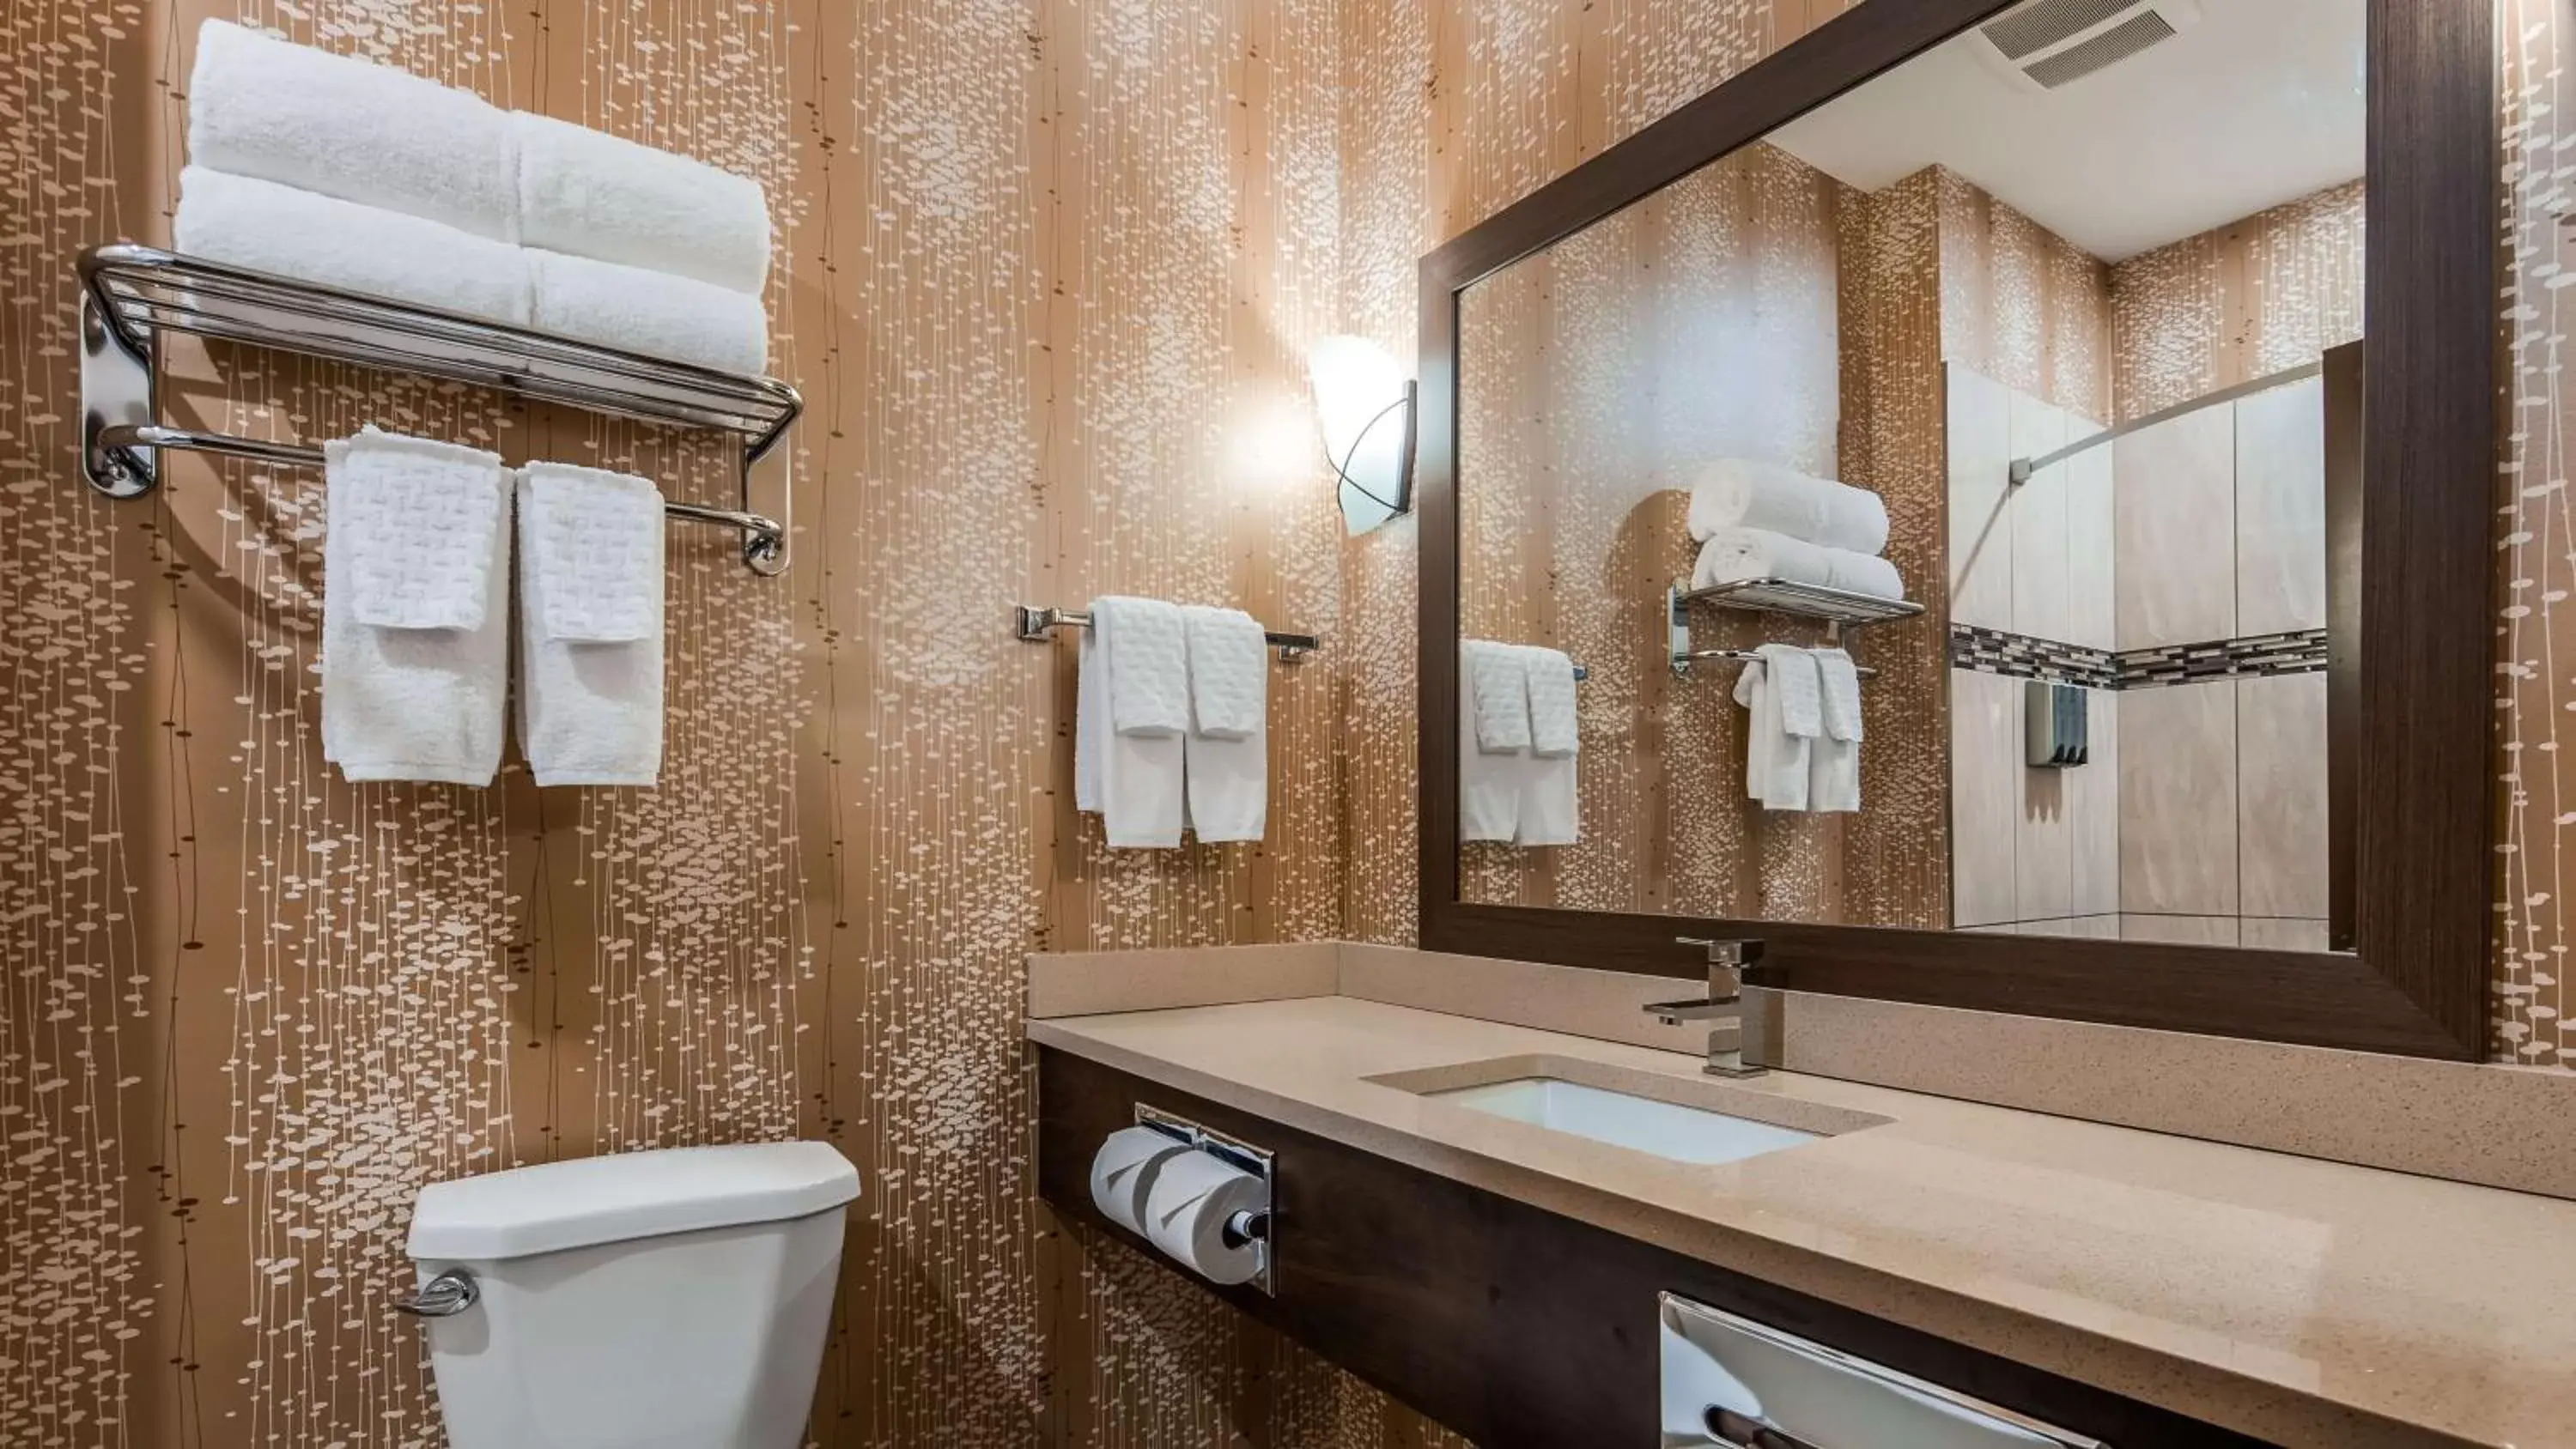 Photo of the whole room, Bathroom in Best Western Plus Kindersley Hotel